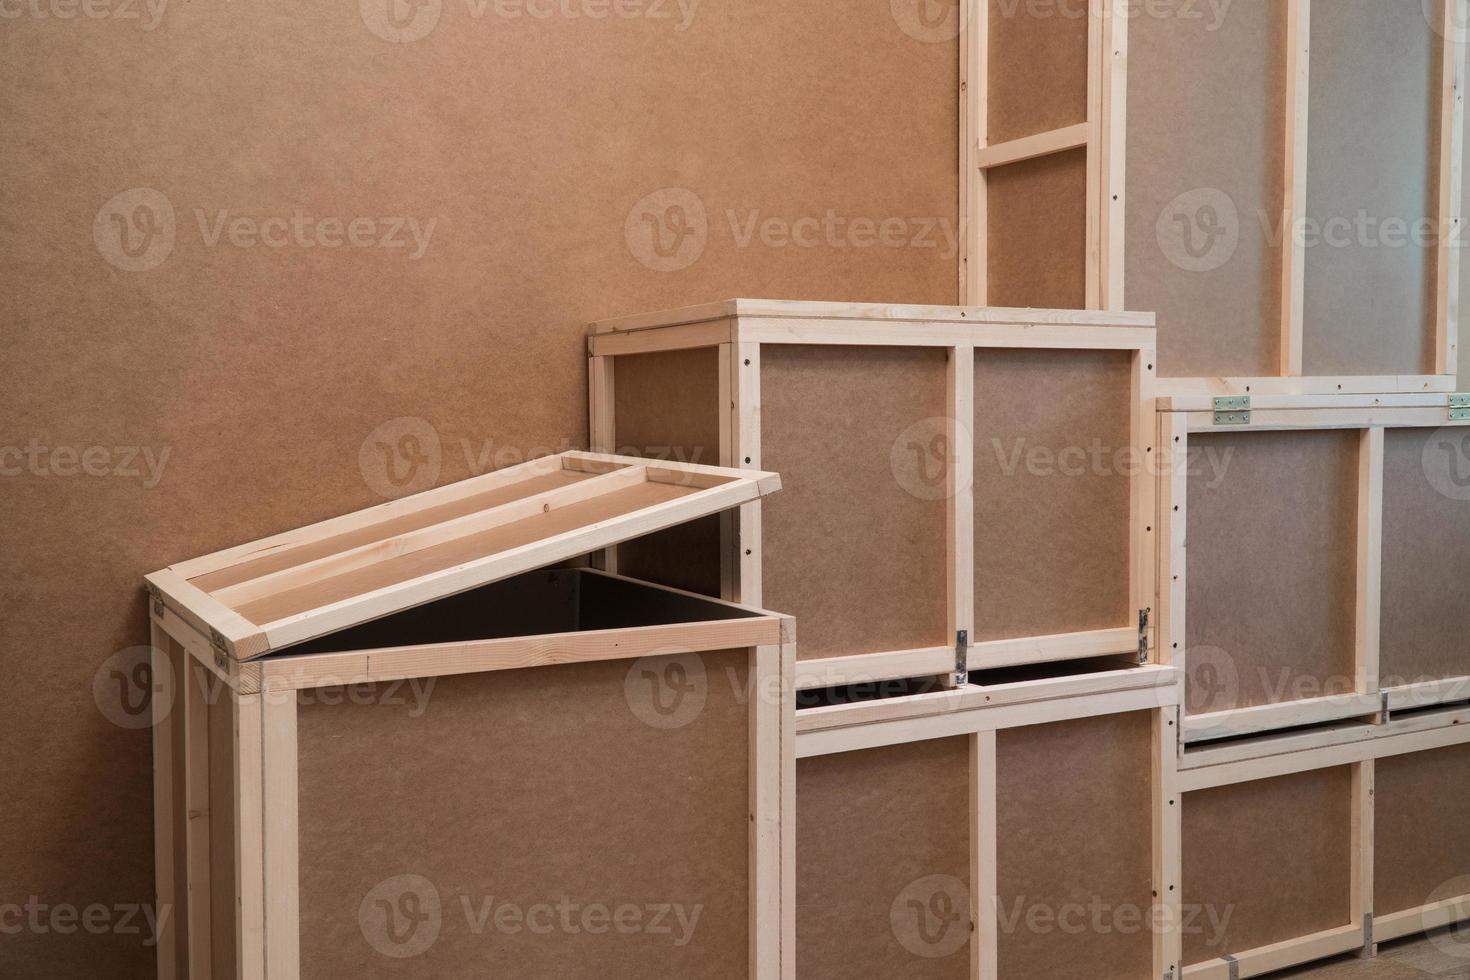 caisses en bois contreplaqué pour le transport et le stockage. caisse à usage domestique photo